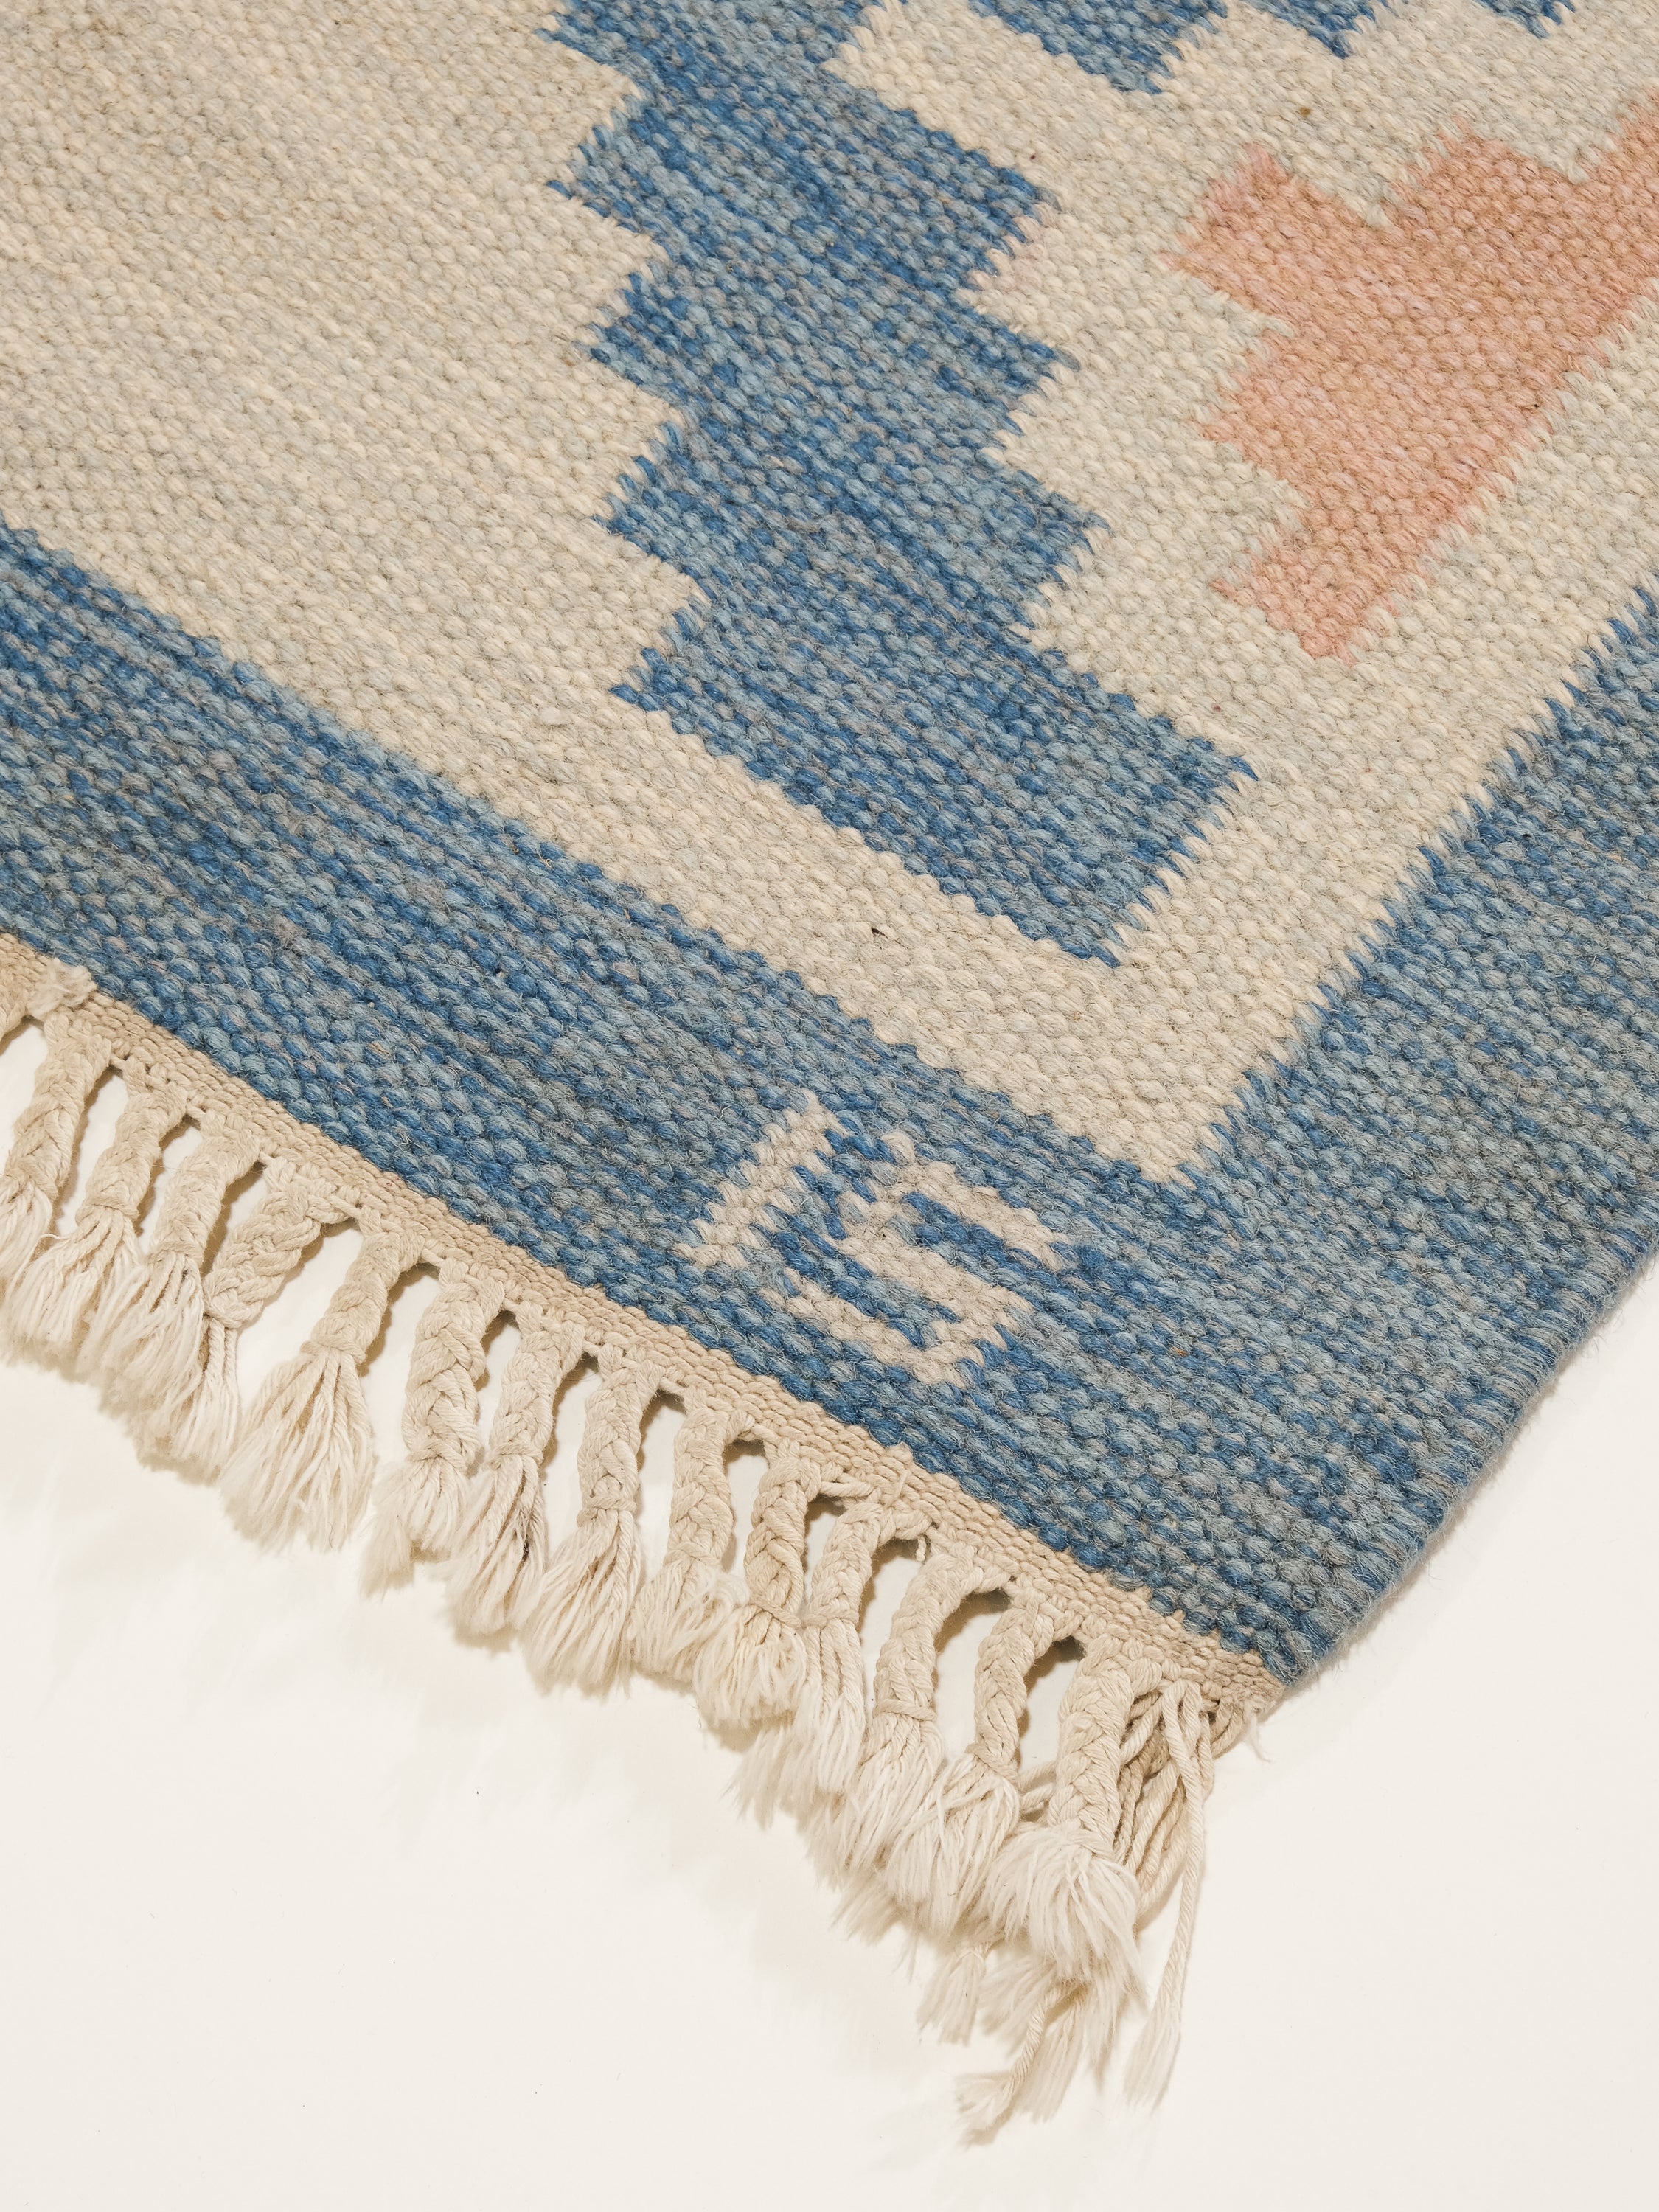 Vintage Swedish Flatweave Wool Rug by Ingegerd Silow